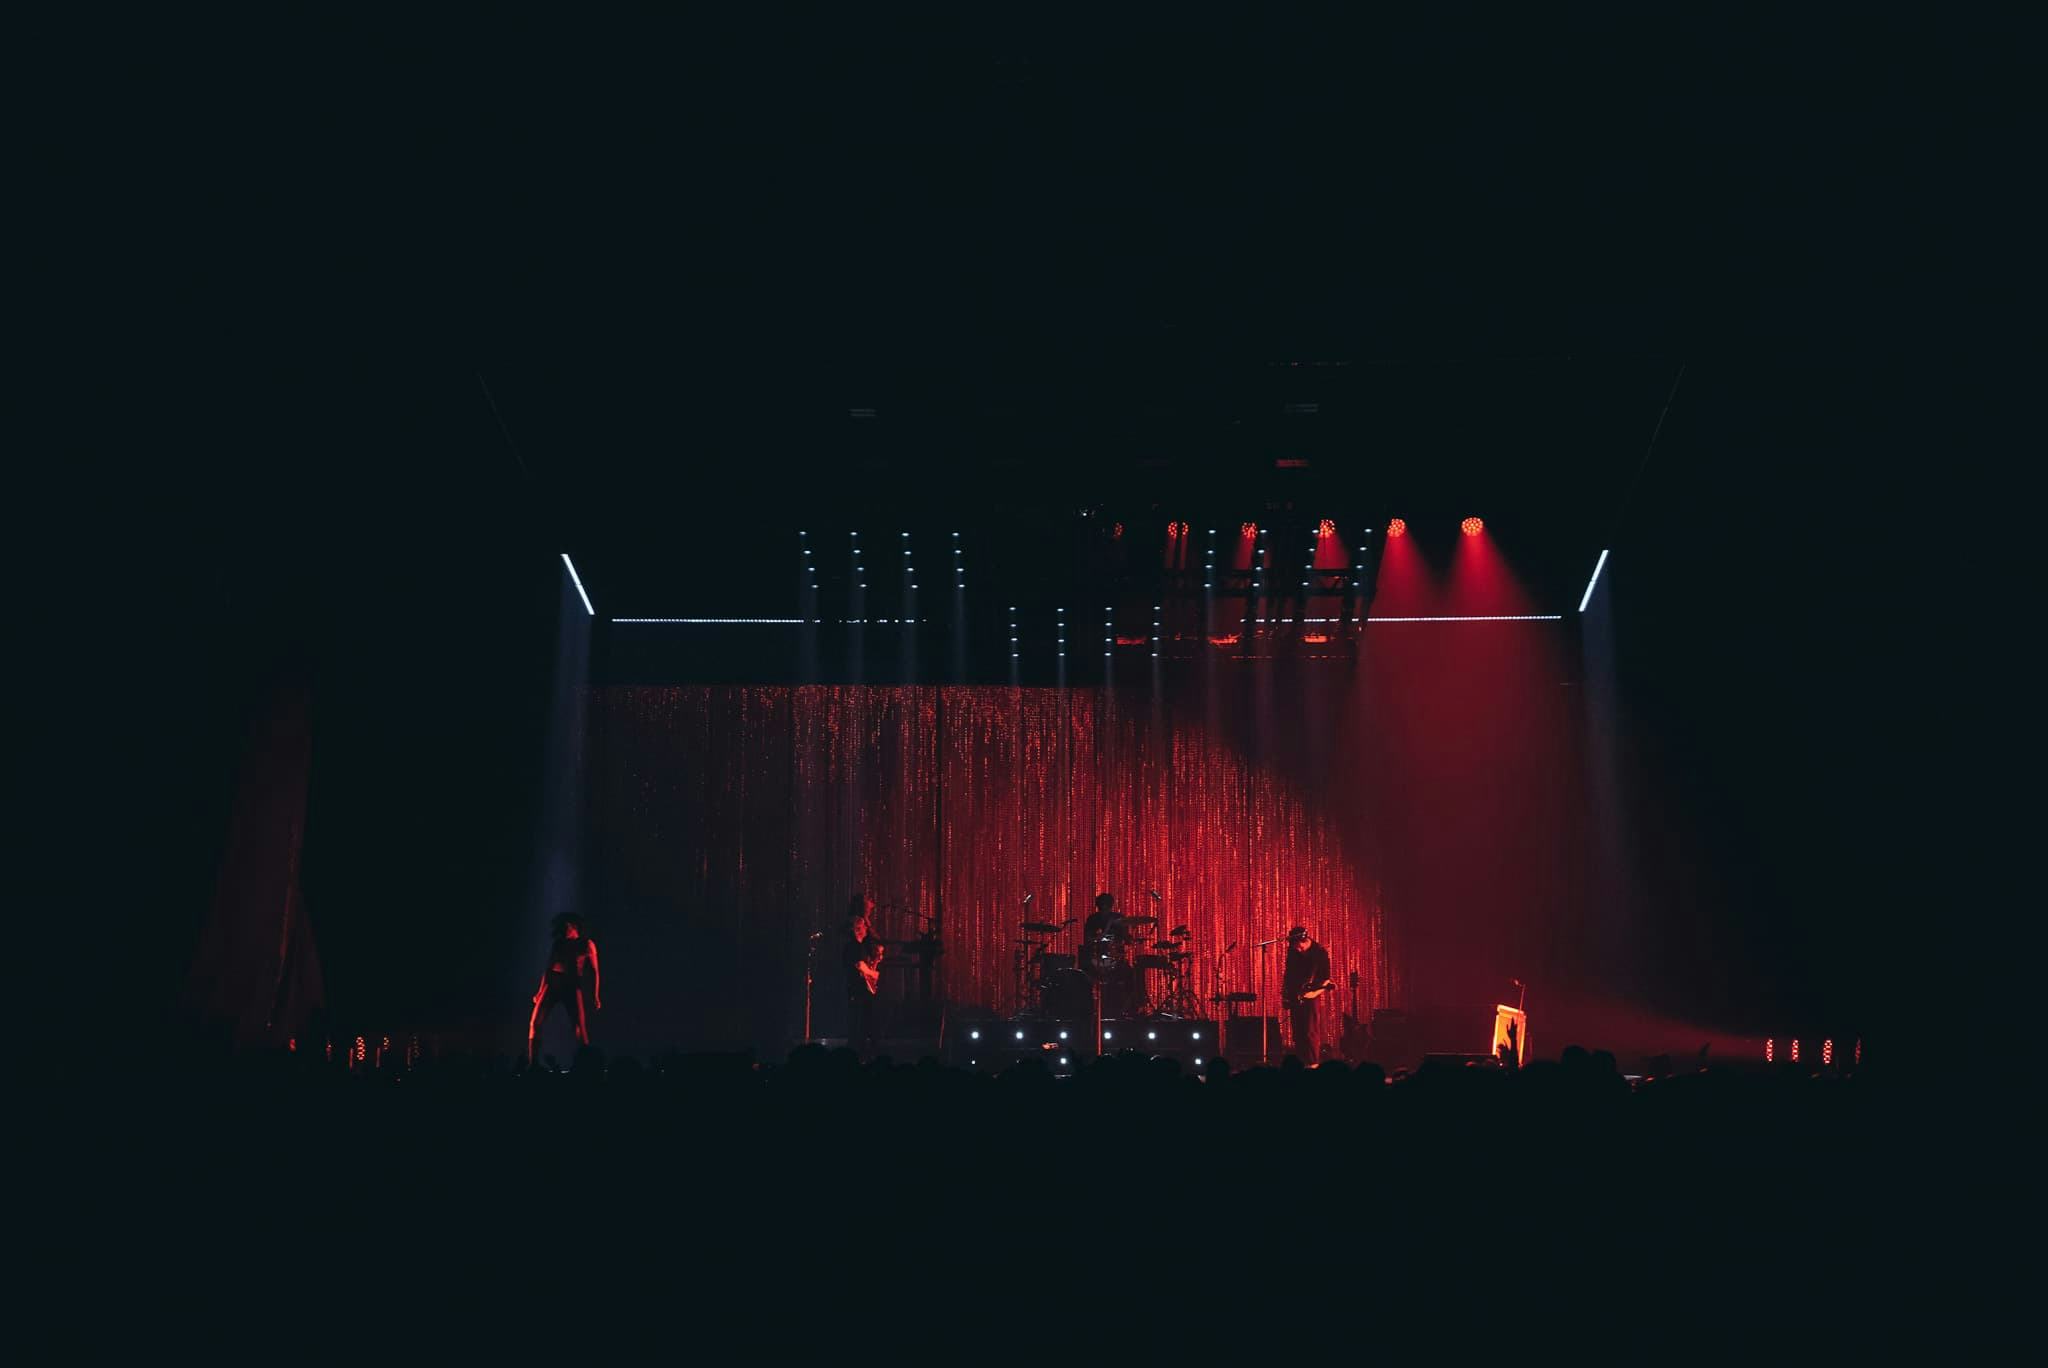 Izia concert at Zénith de Paris during the "La Vitesse" tour, stage design and lighting design, light matrix, chain curtain.